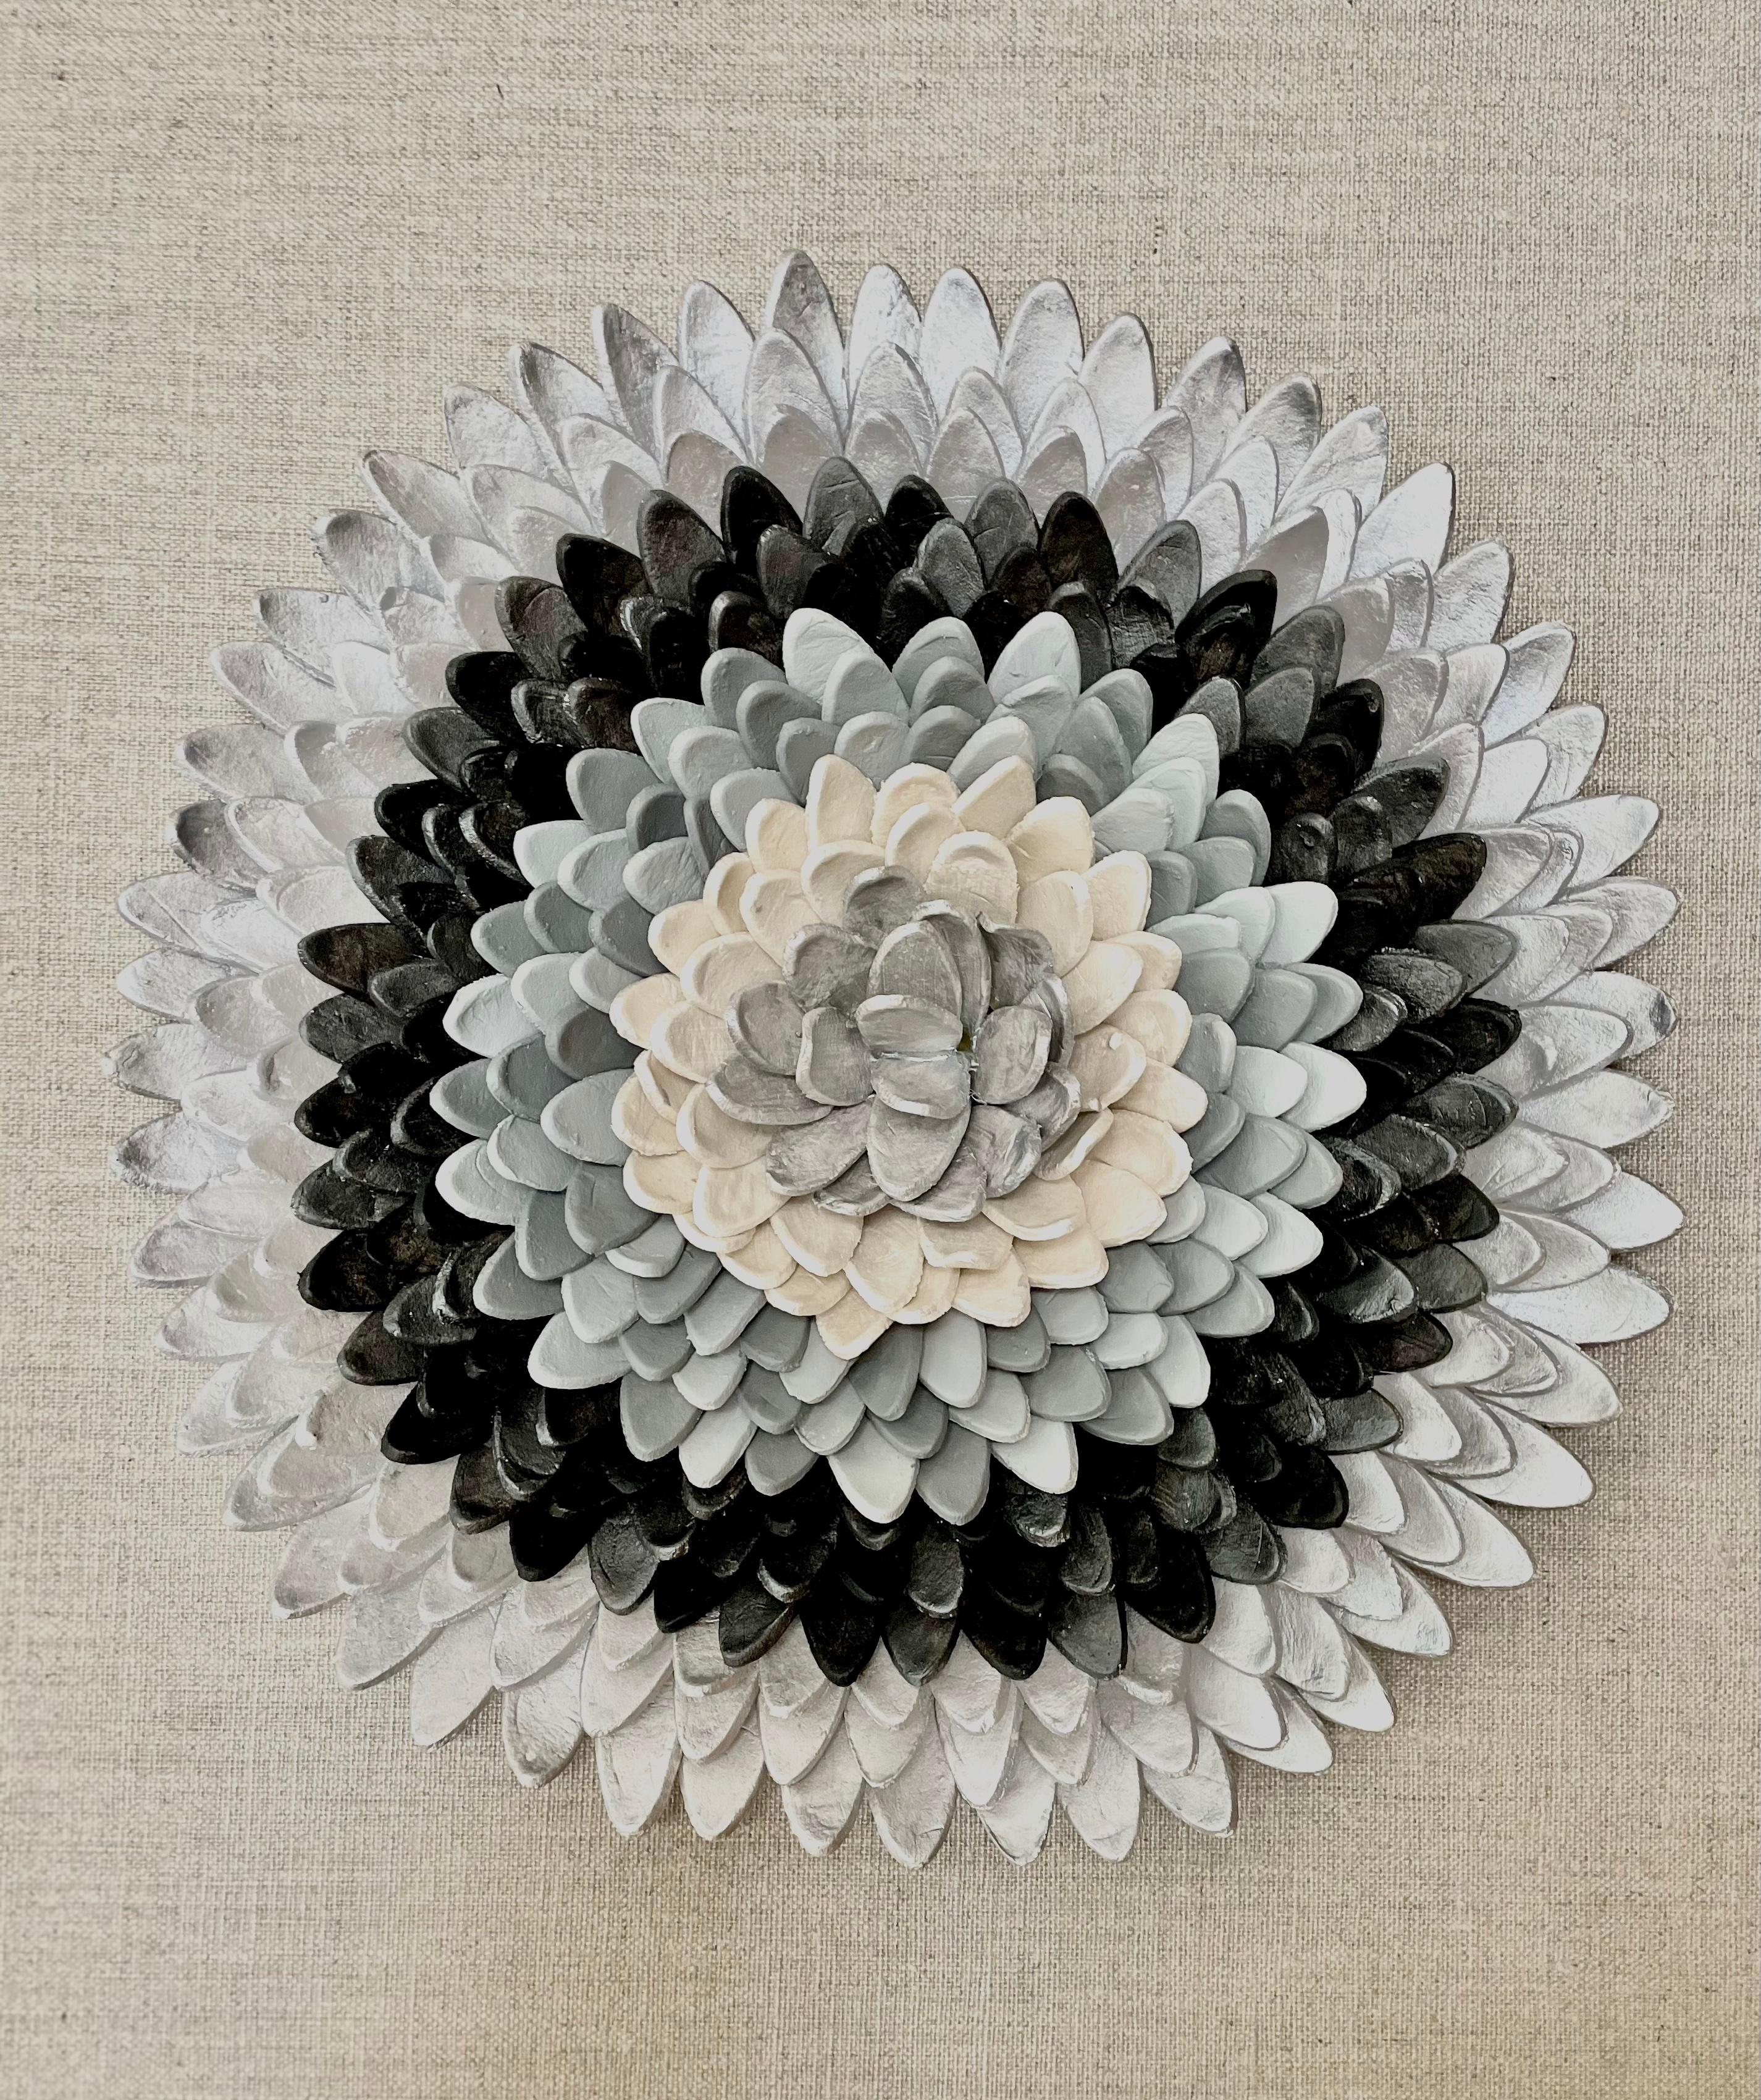 Flos 1 - composition en argile argentée grise à motifs floraux inspirés de la nature en 3D dans une boîte en plexiglas - Mixed Media Art de Marie Laforey